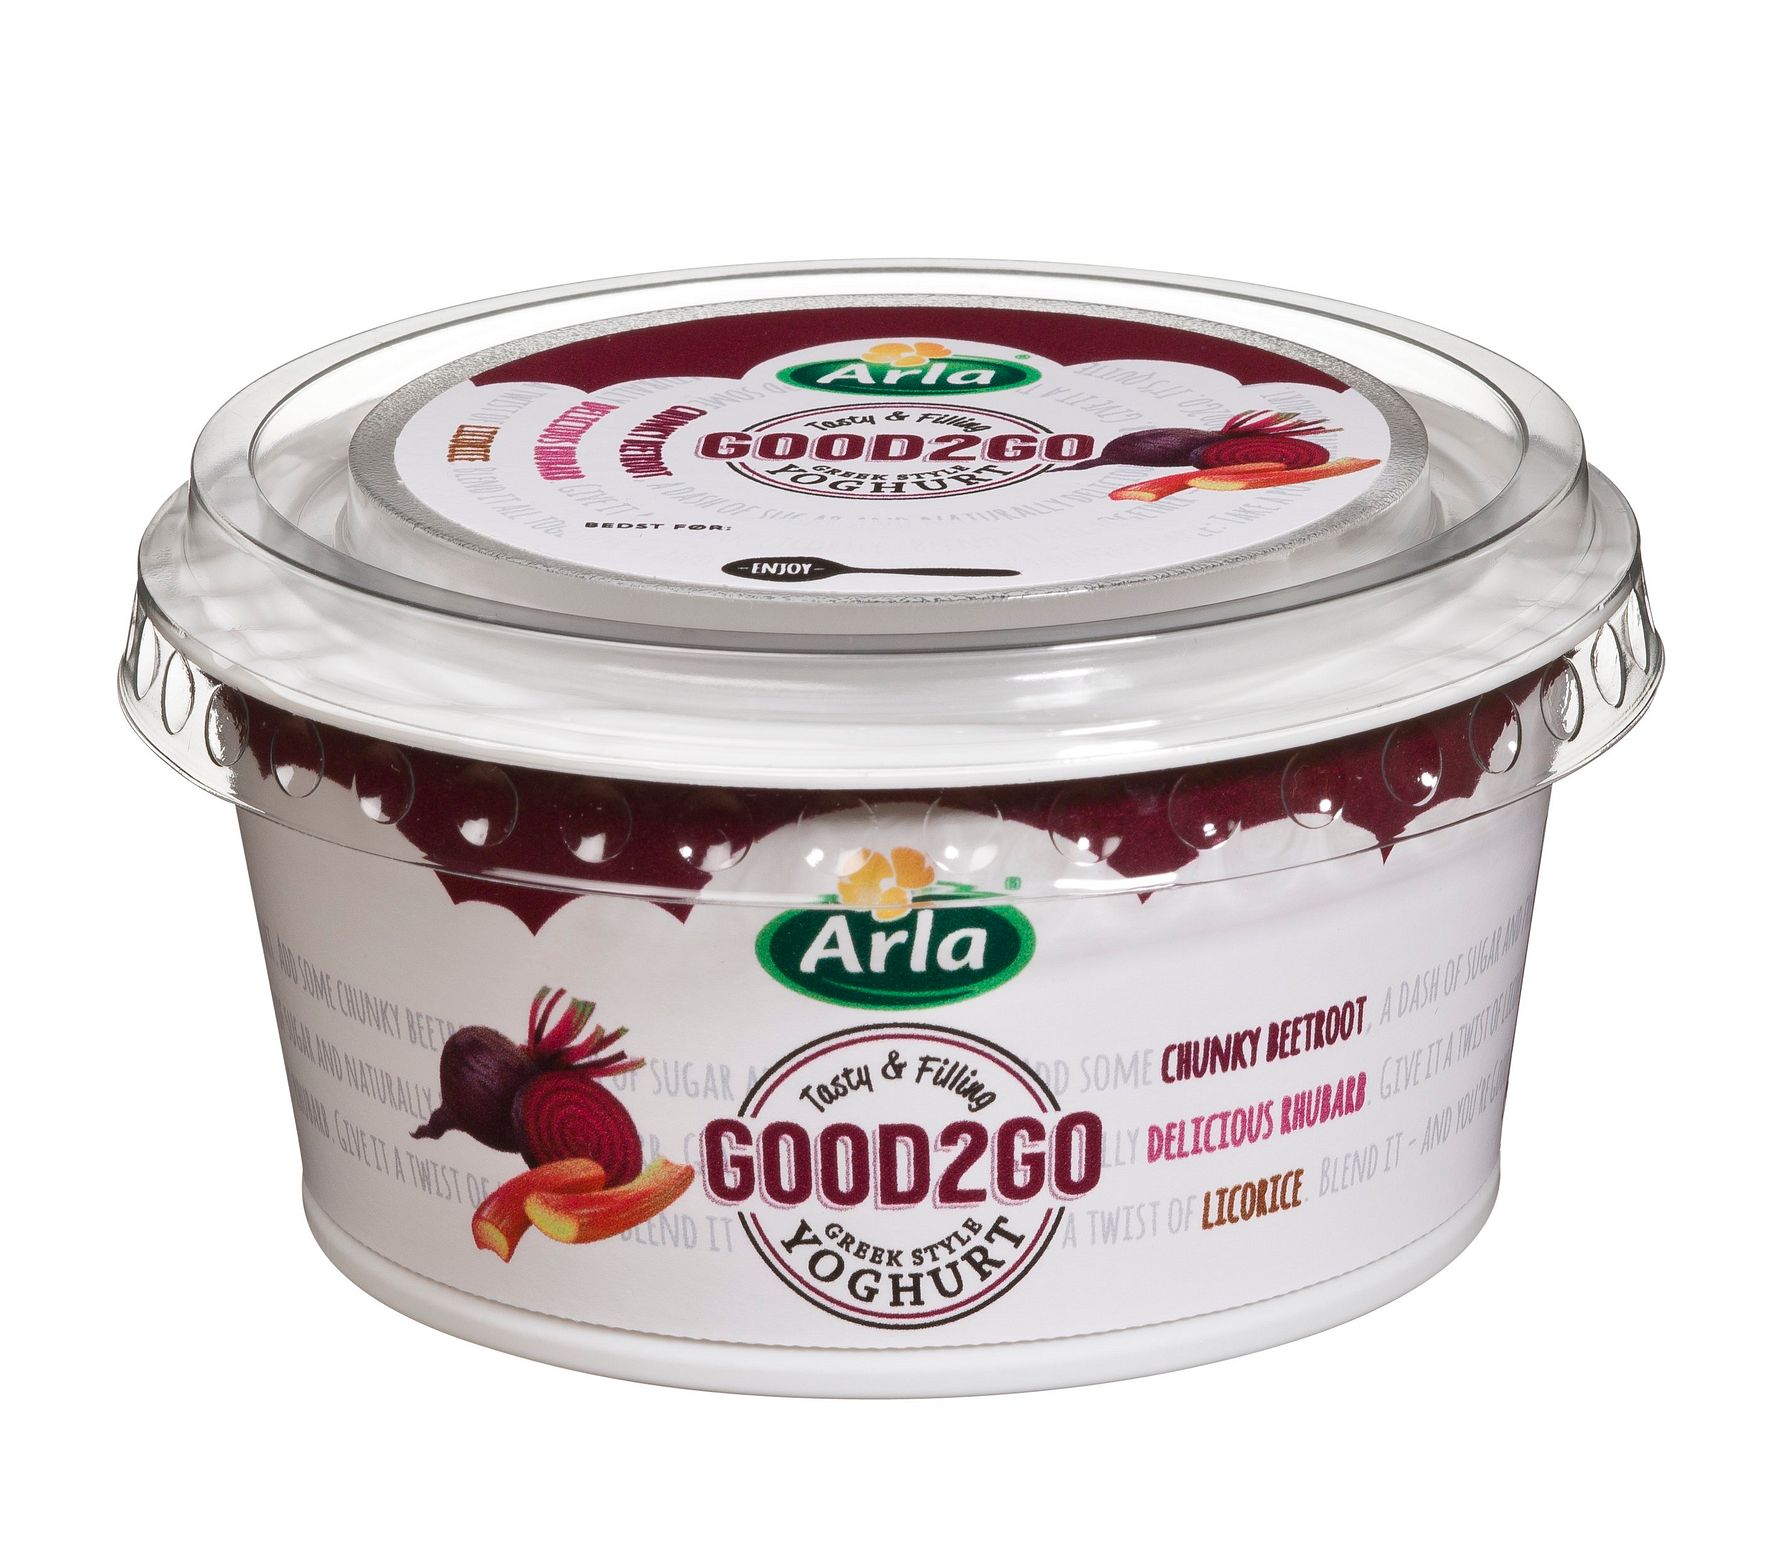 Good2Go yoghurtprodukter tilbagekaldes